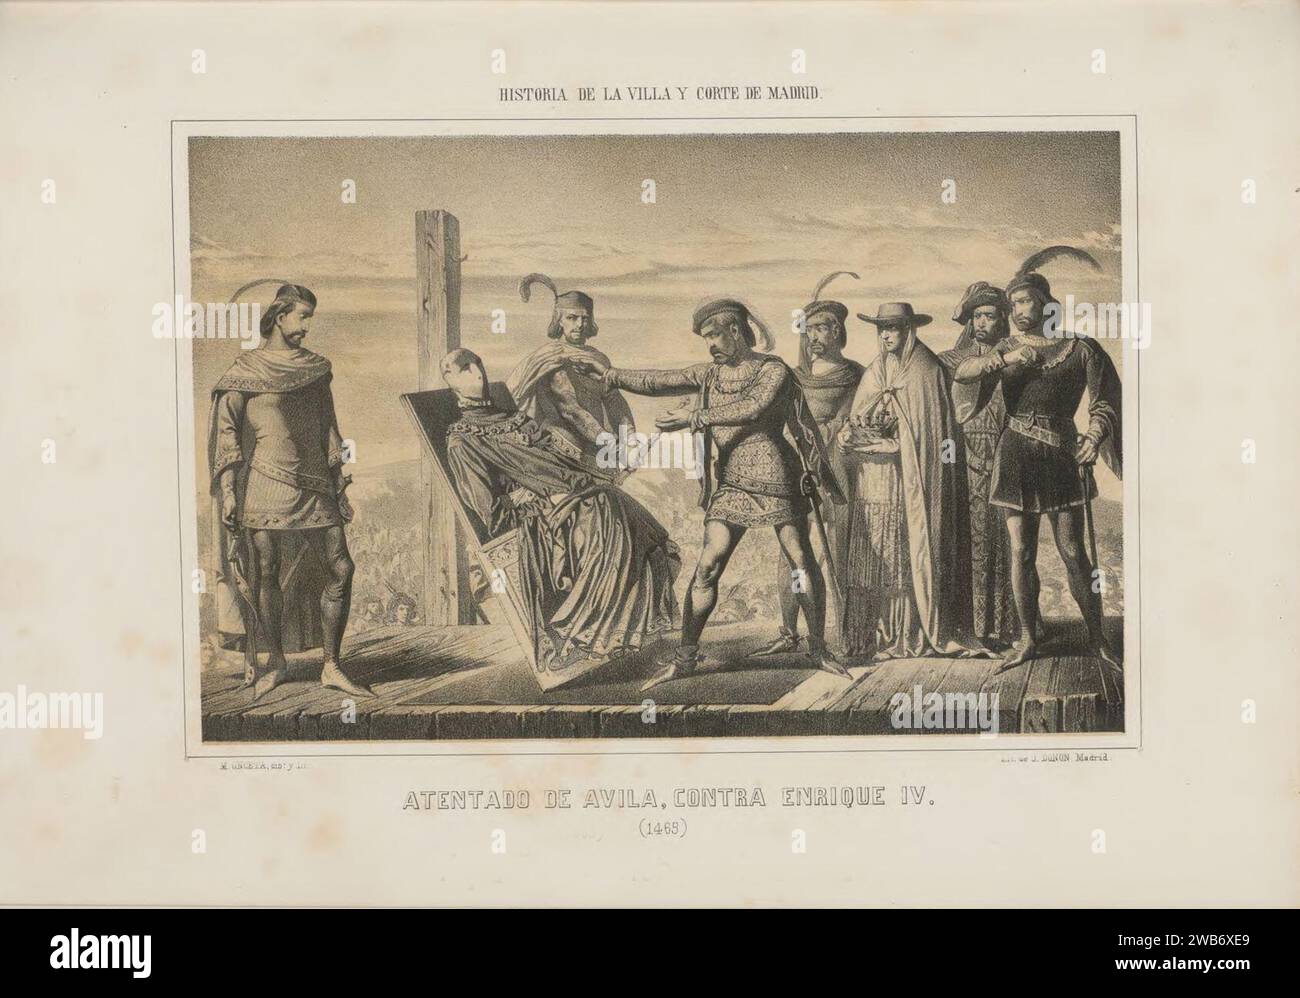 1862, Historia de la Villa y Corte de Madrid, vol. 2, Atentado de Ávila, contra Enrique IV. Stock Photo